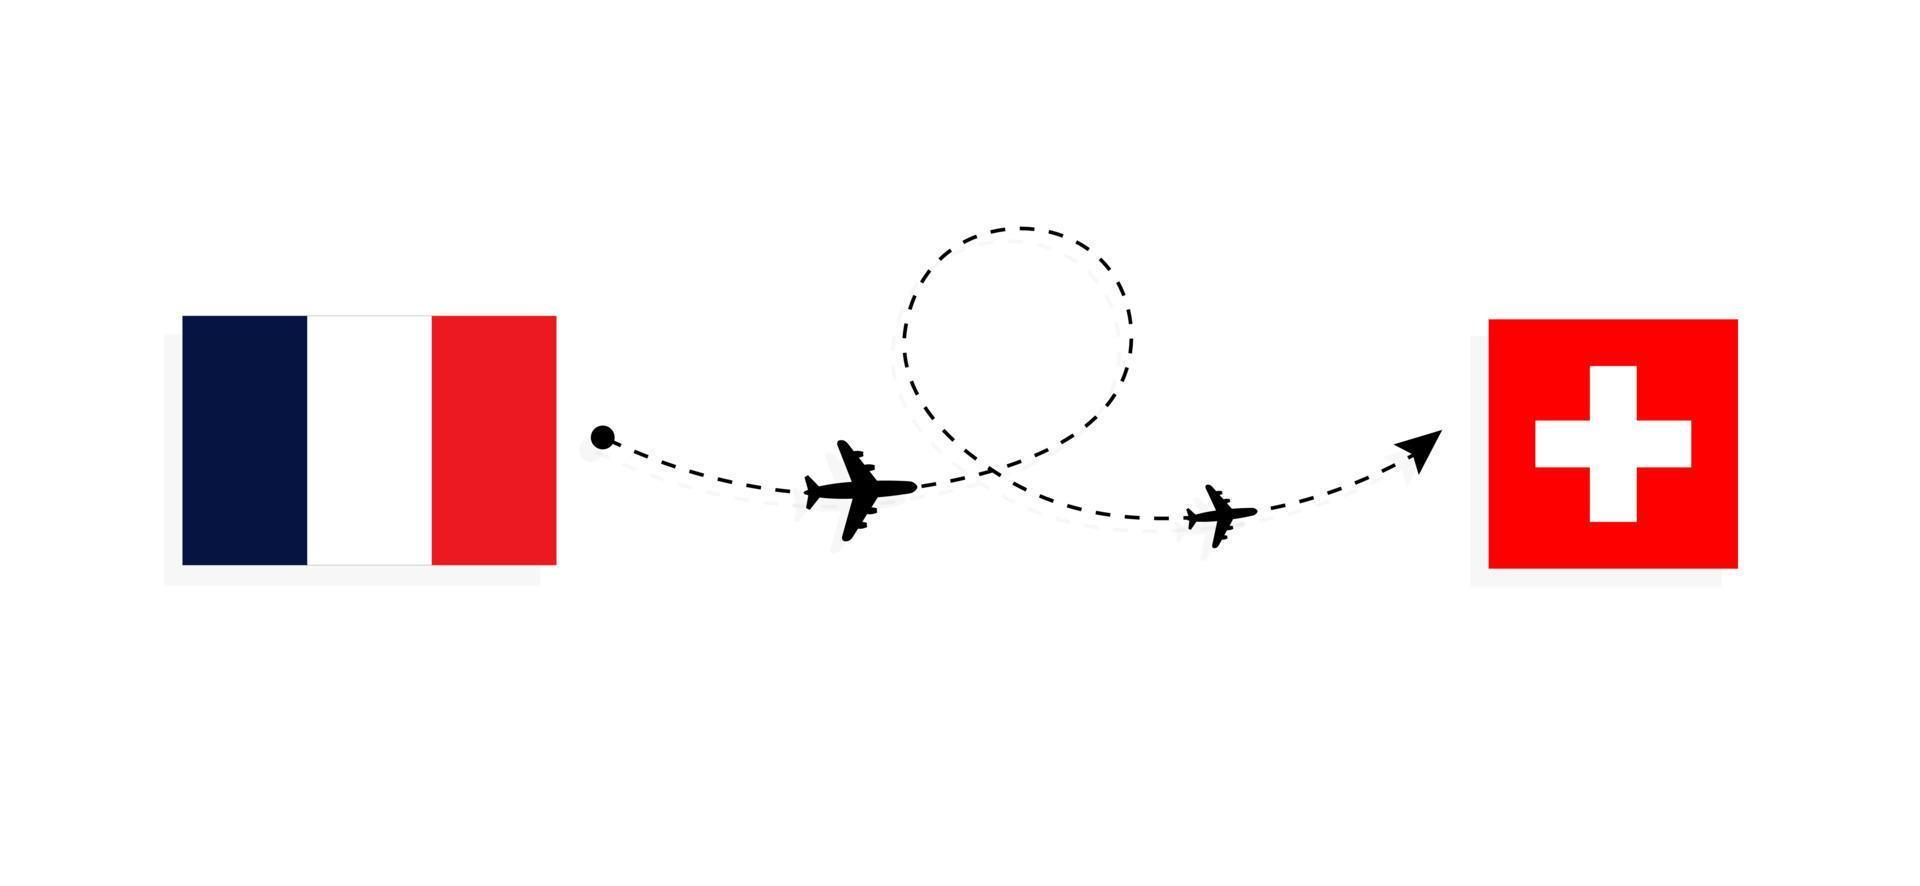 vol et voyage de la france vers la suisse par concept de voyage en avion de passagers vecteur